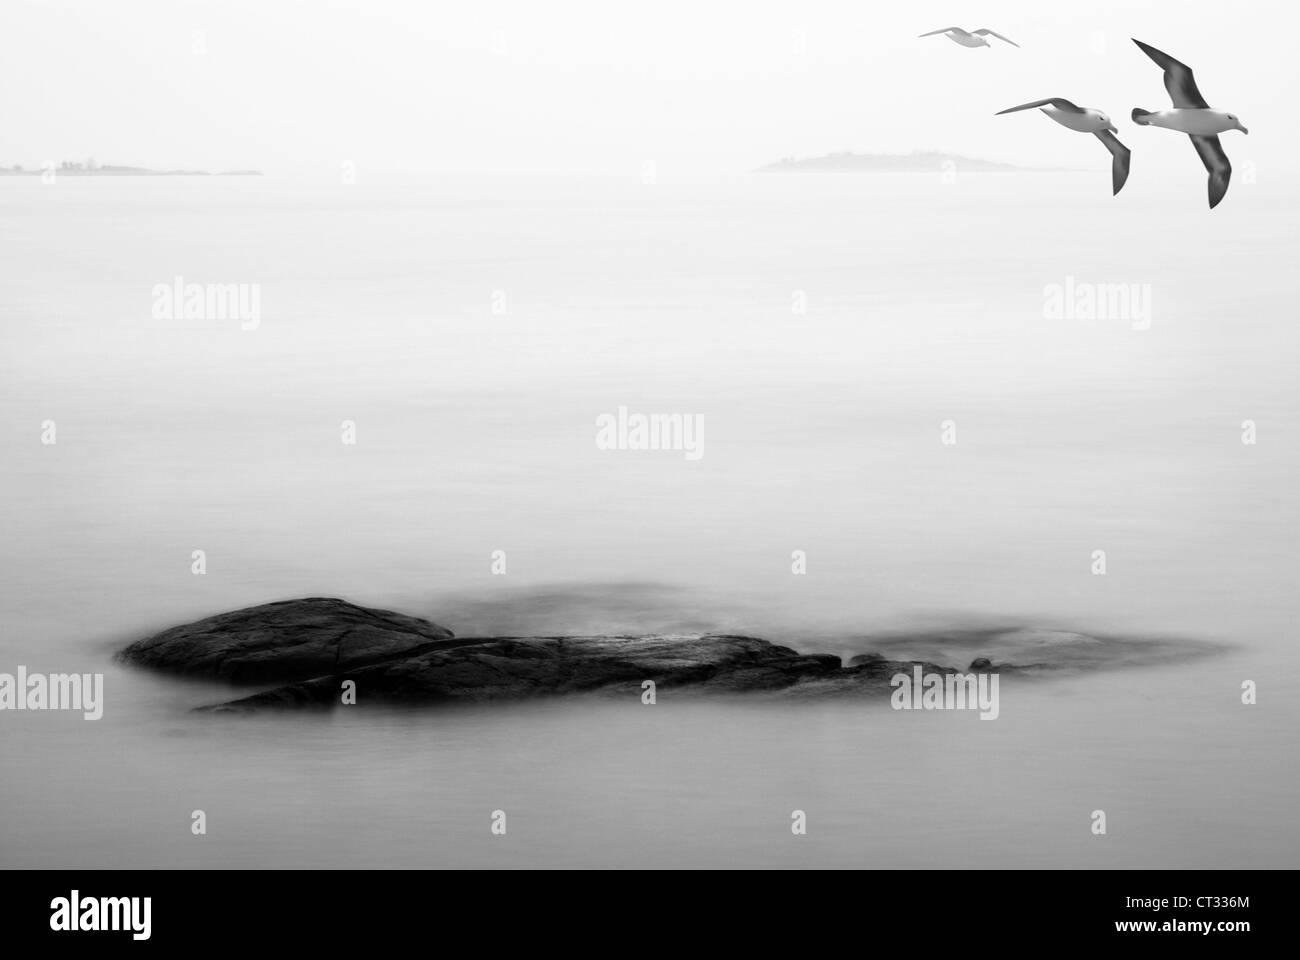 Möwen fliegen über die Inseln in eine Herbstlandschaft, schwarz / weiß Fotografie und illustration Stockfoto